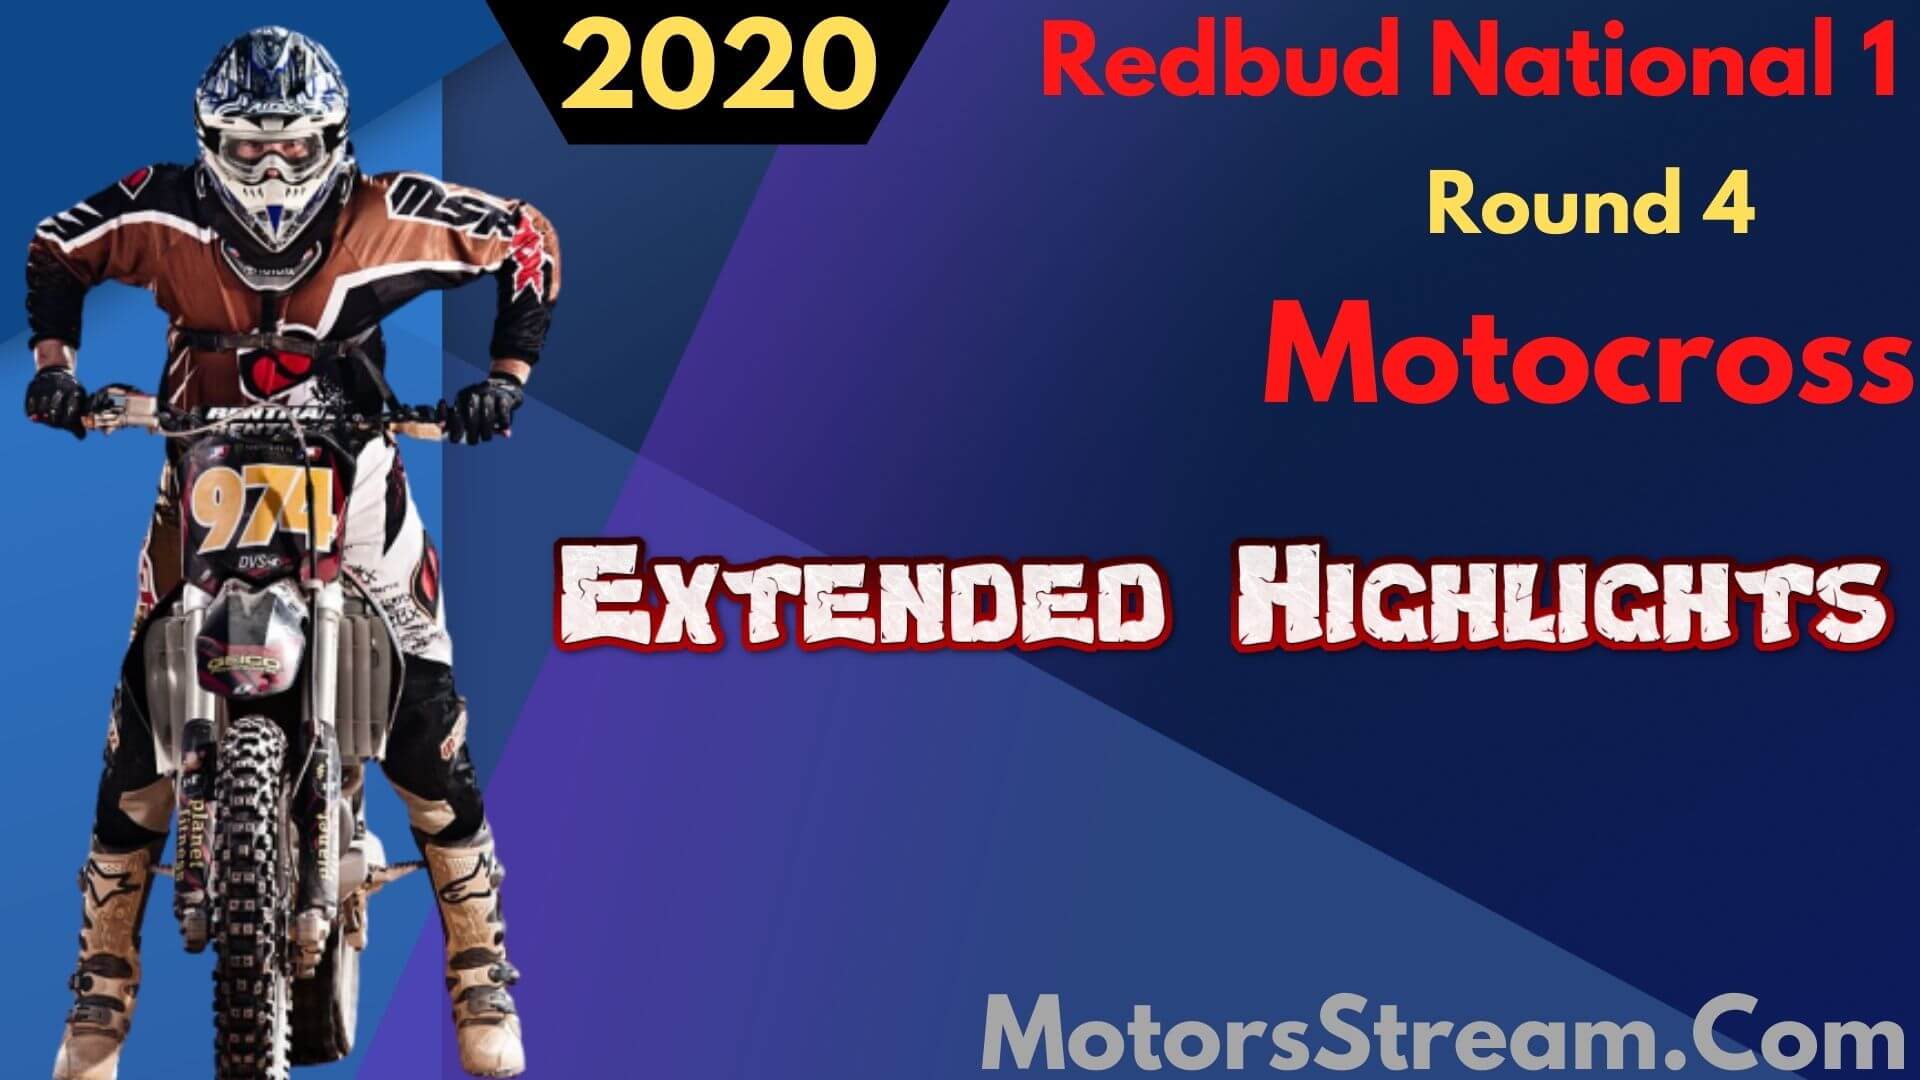 Redbud National 1 Rd 4 Motocross Extended Highlights 2020